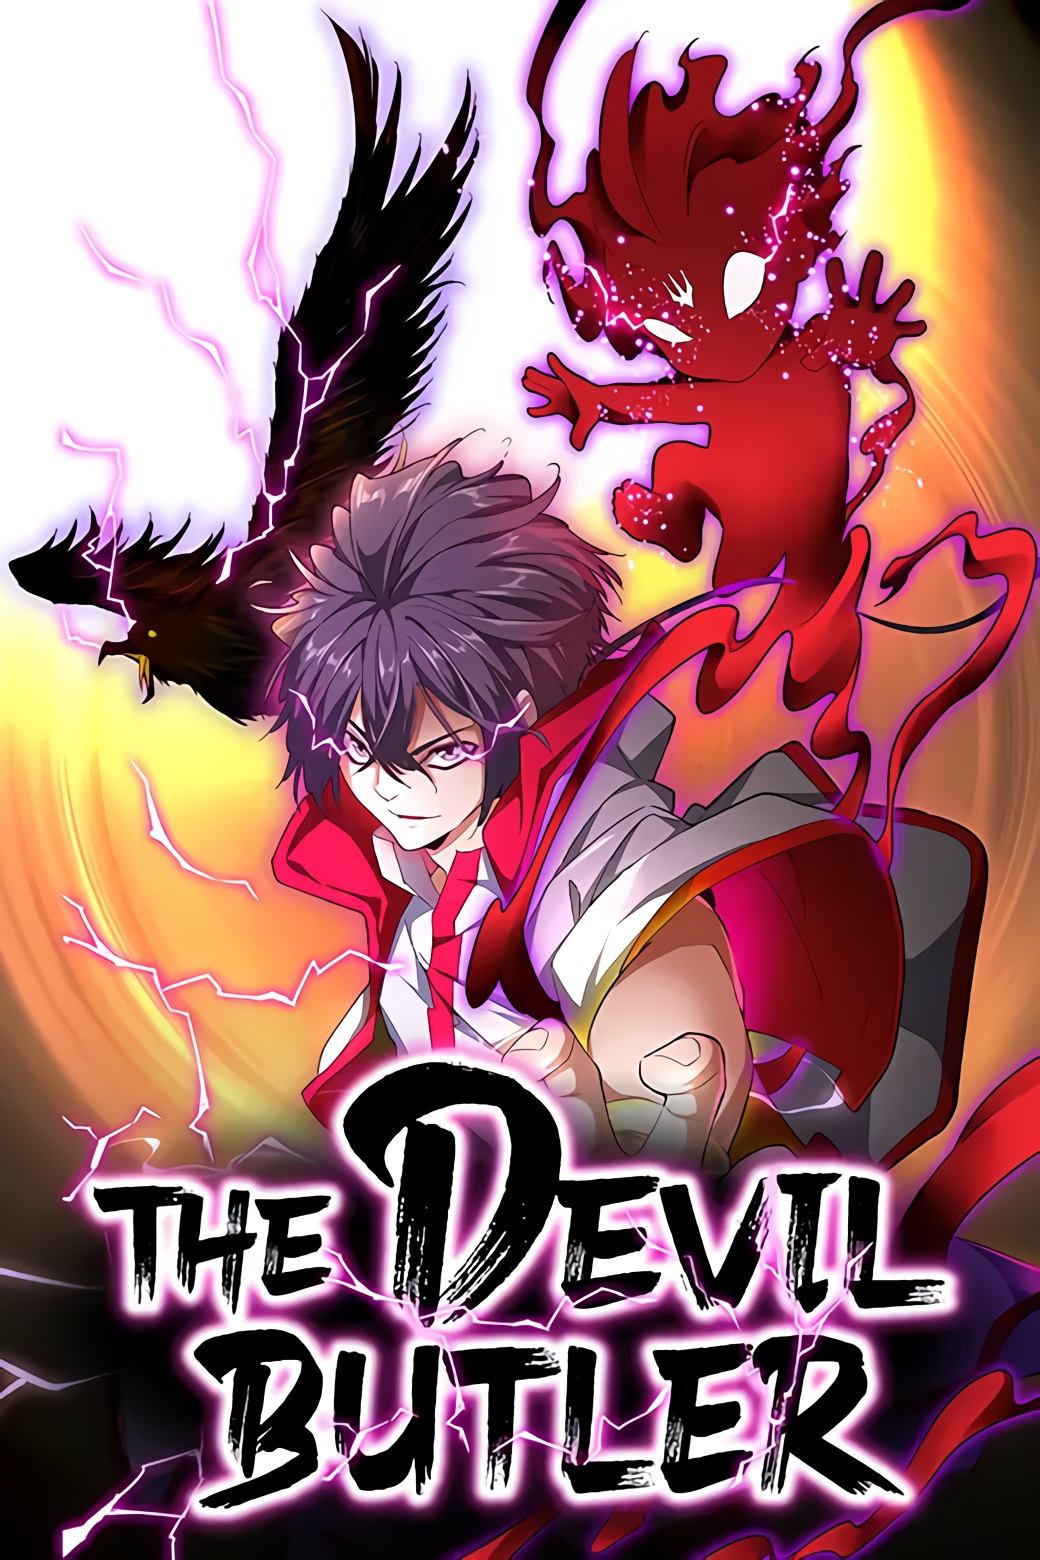 The Devil Butler